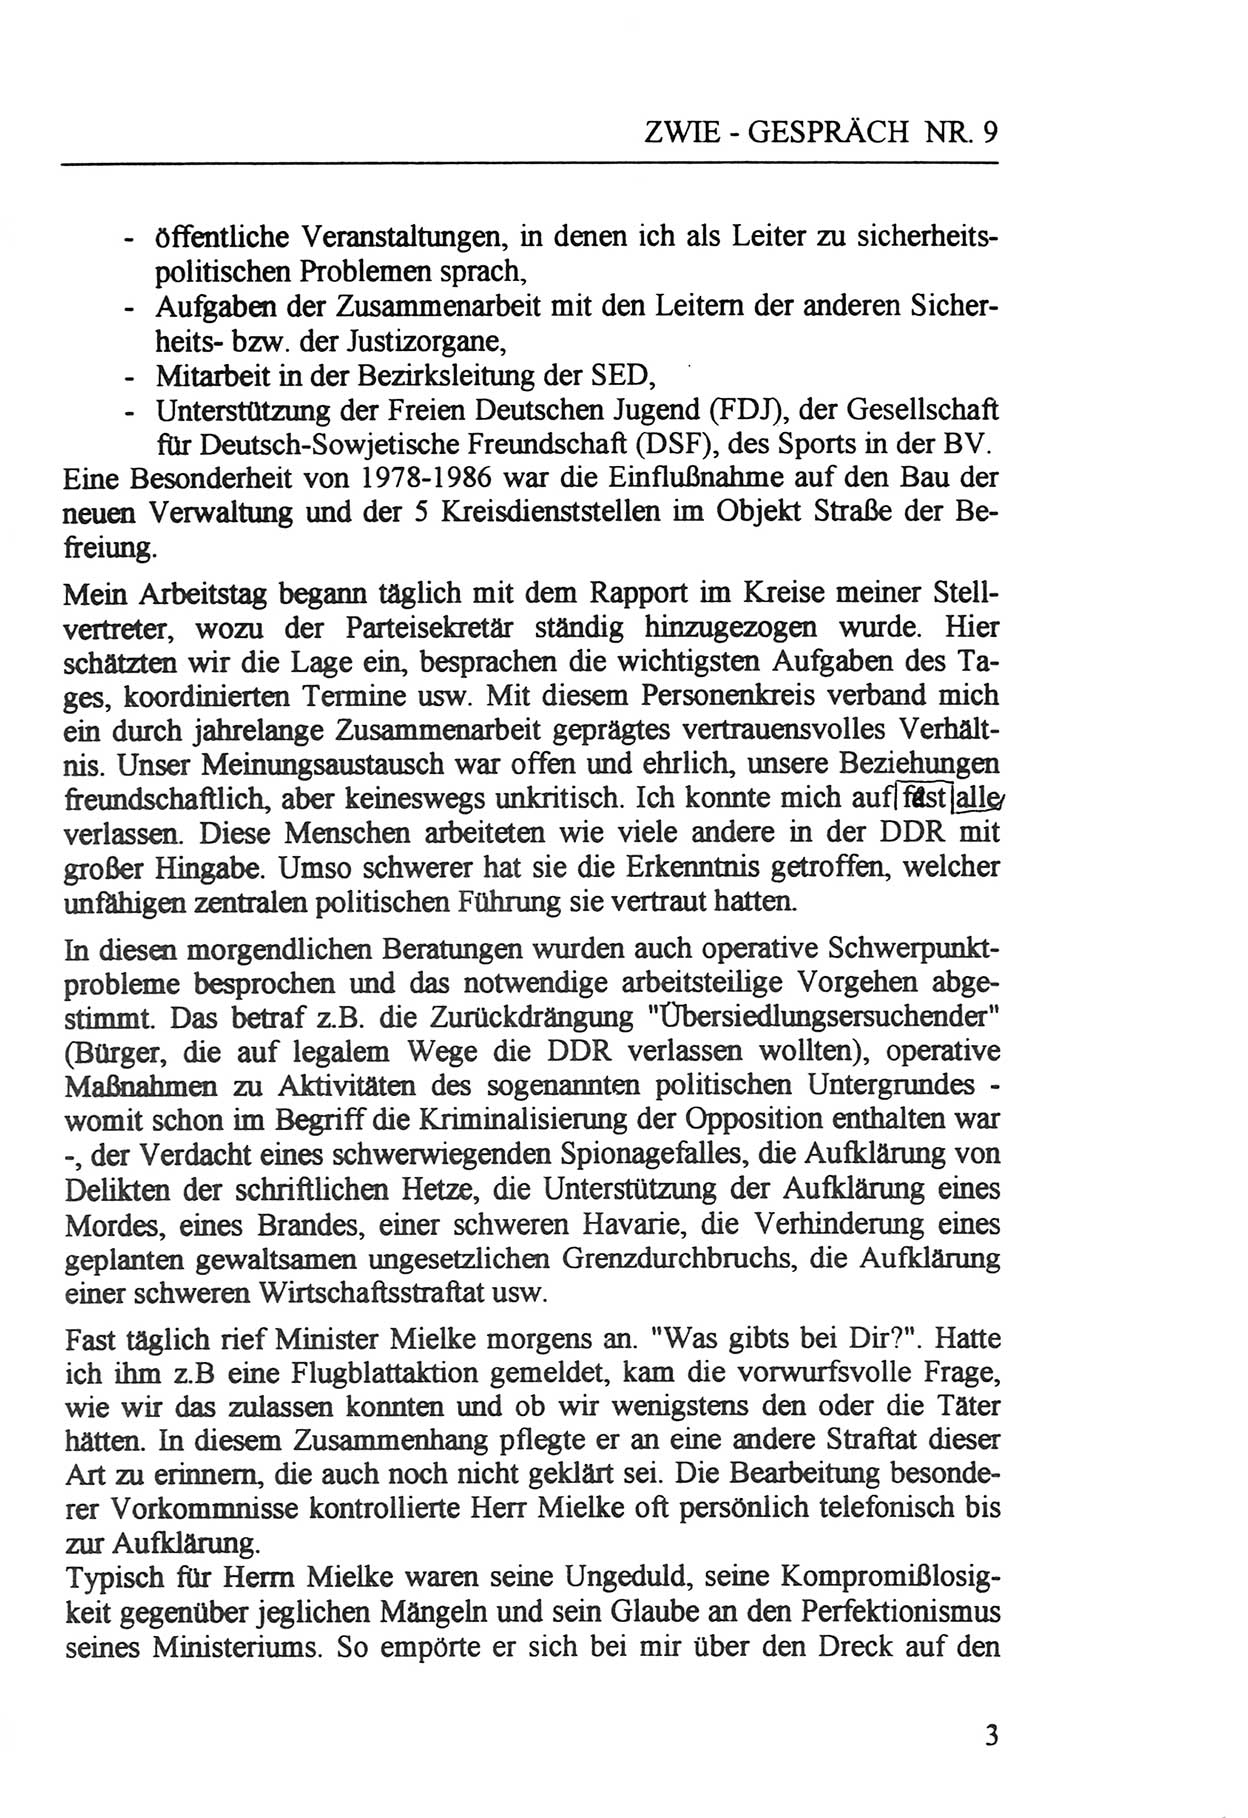 Zwie-Gespräch, Beiträge zur Aufarbeitung der Staatssicherheits-Vergangenheit [Deutsche Demokratische Republik (DDR)], Ausgabe Nr. 9, Berlin 1992, Seite 3 (Zwie-Gespr. Ausg. 9 1992, S. 3)